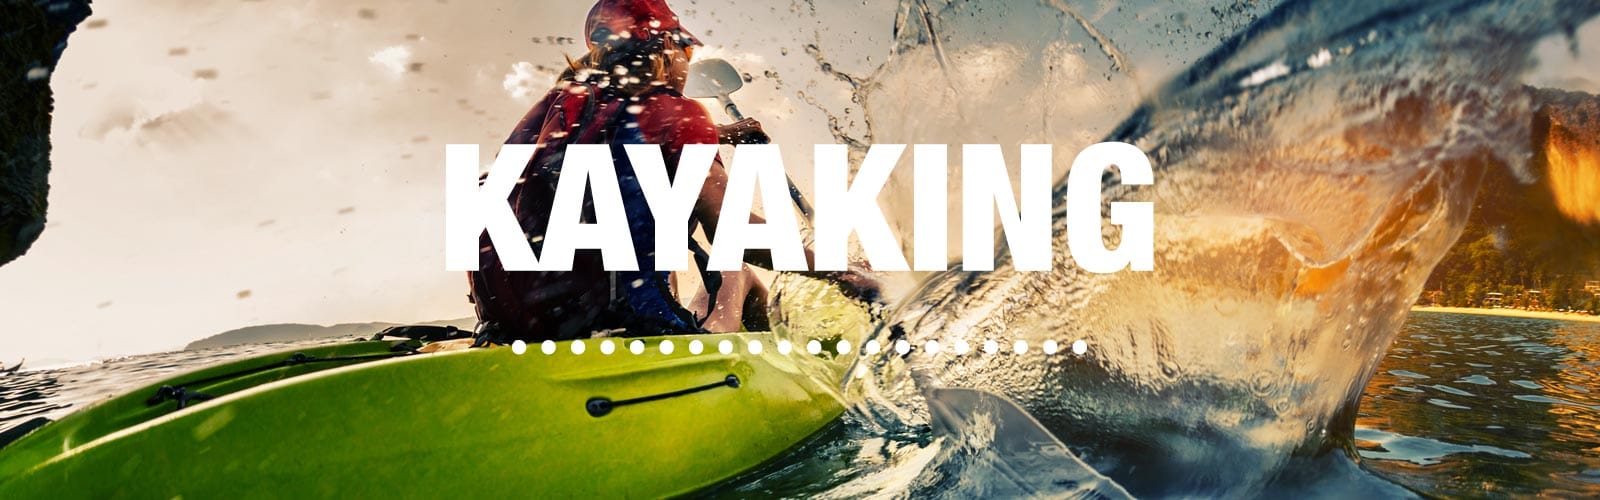 Kayaking Checklist